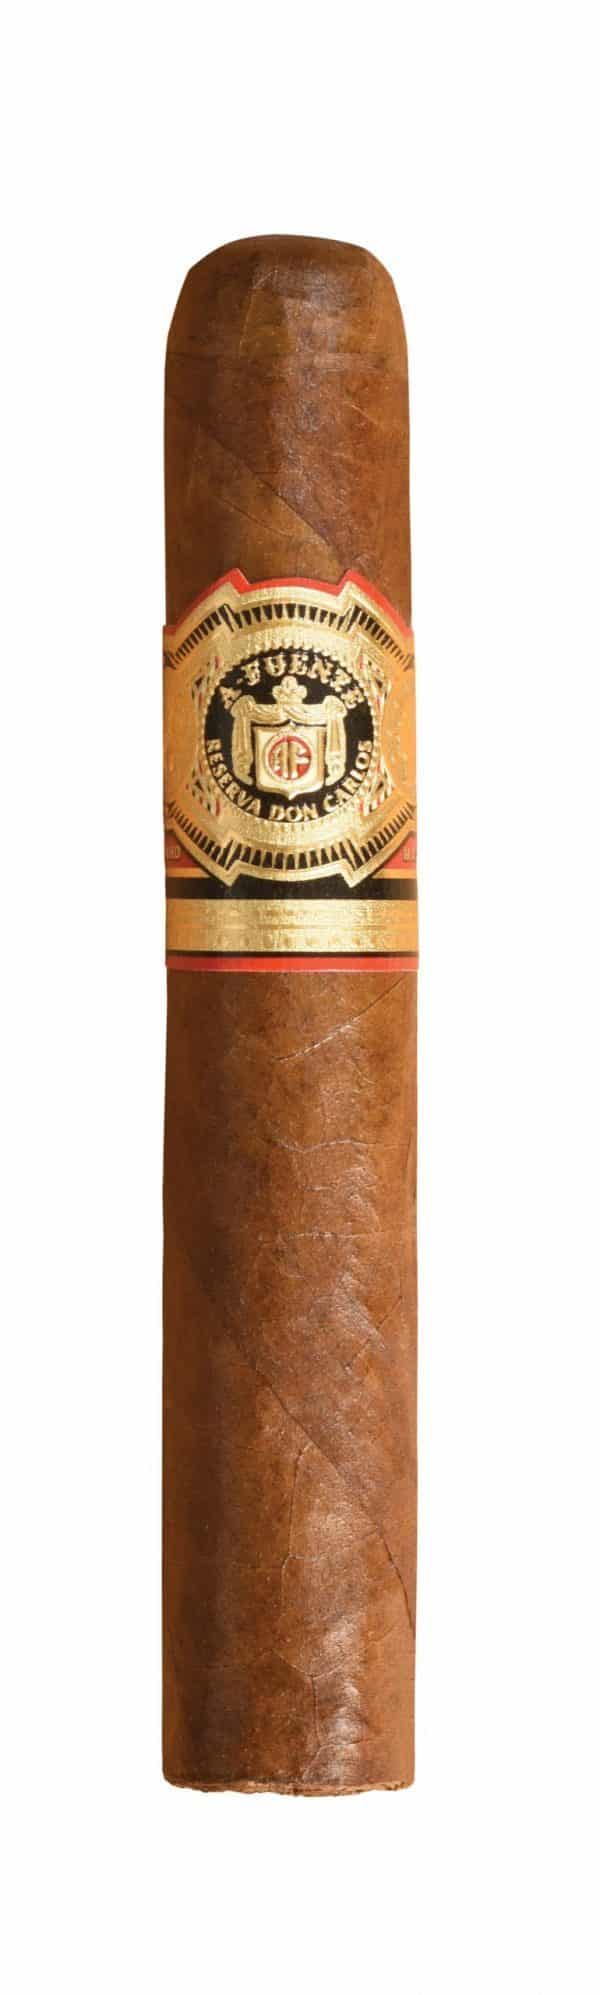 single arturo fuente don carlos robusto cigar